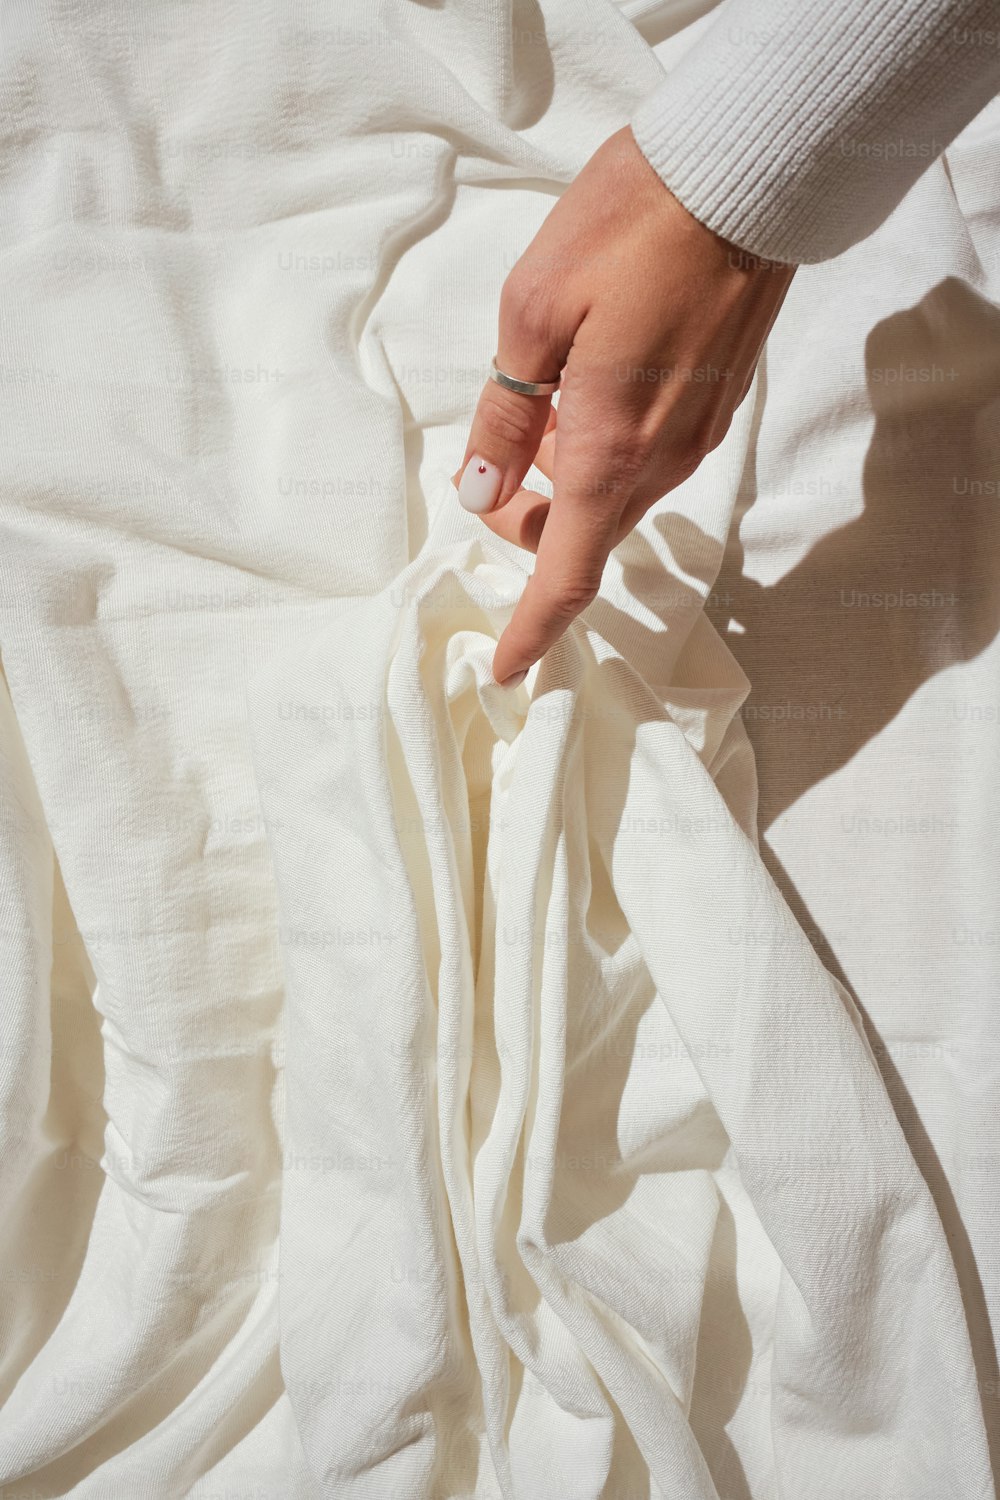 a mão de uma pessoa em cima de um lençol branco